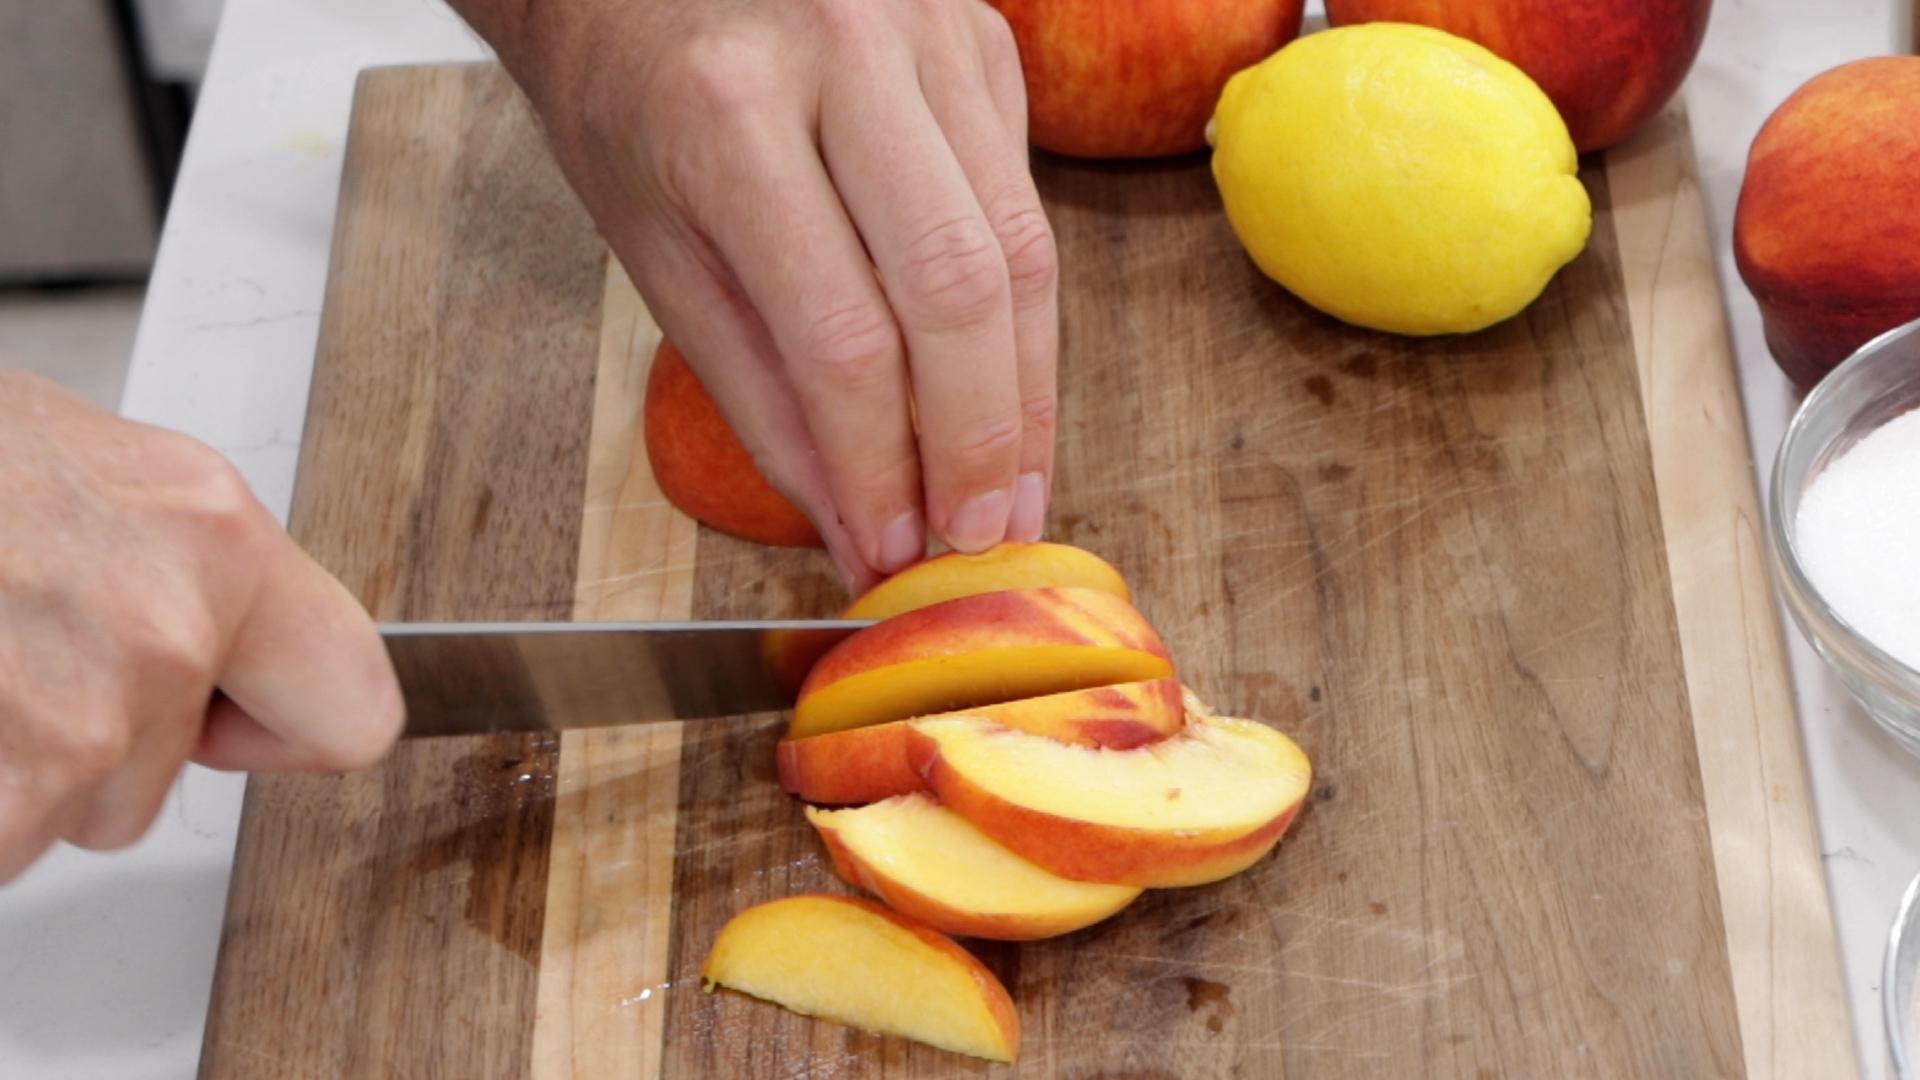 How to Make Peach Cobbler From Scratch Homemade Peach Cobbler Recipe.00_01_20_17.Still001.jpg